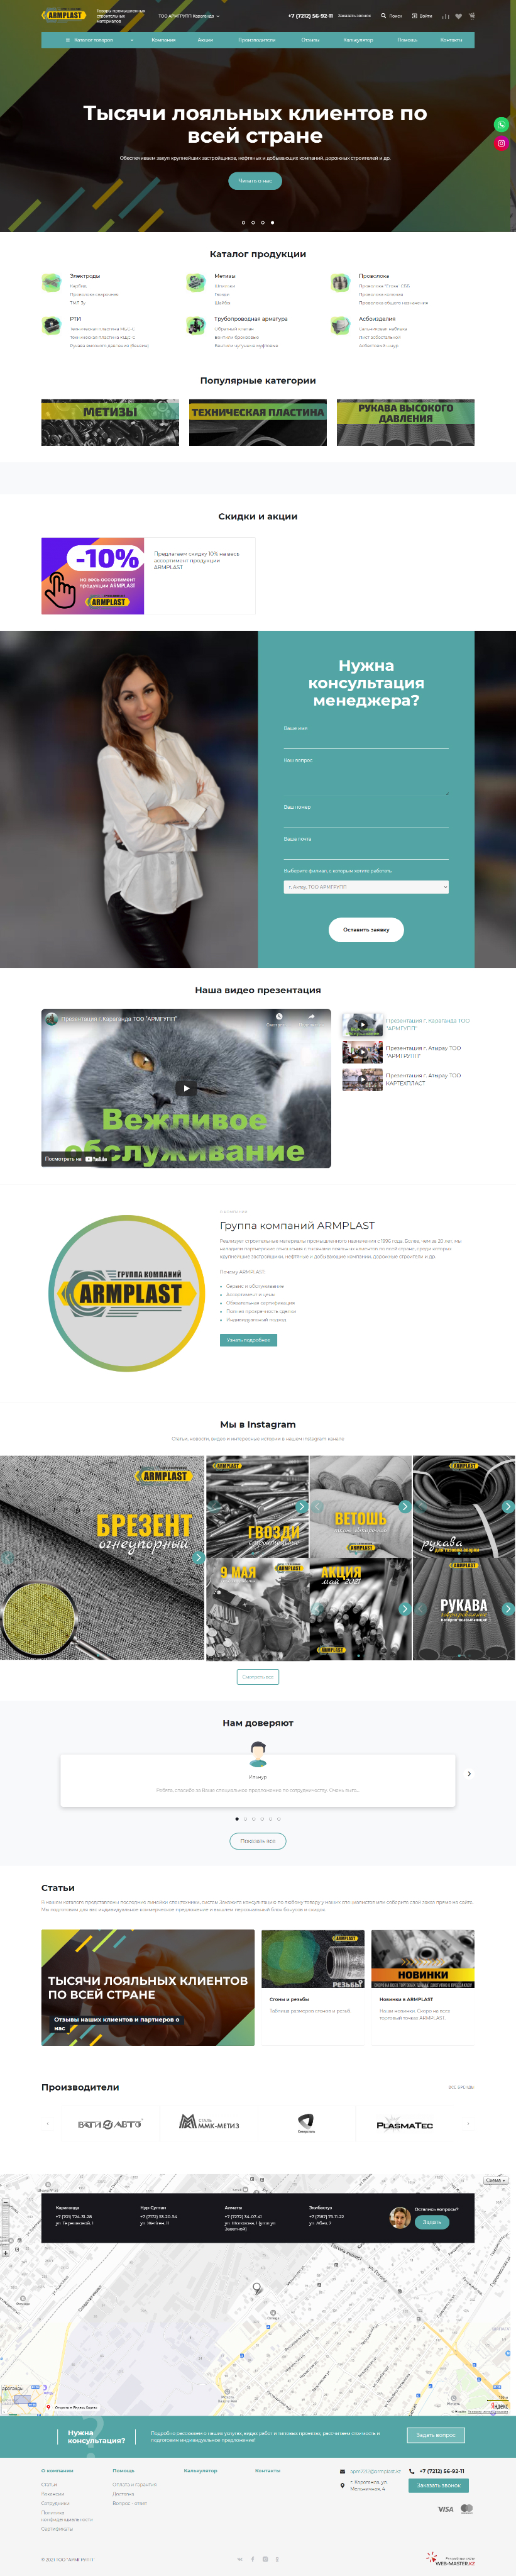 Создание интернет-магазина «Armplast»